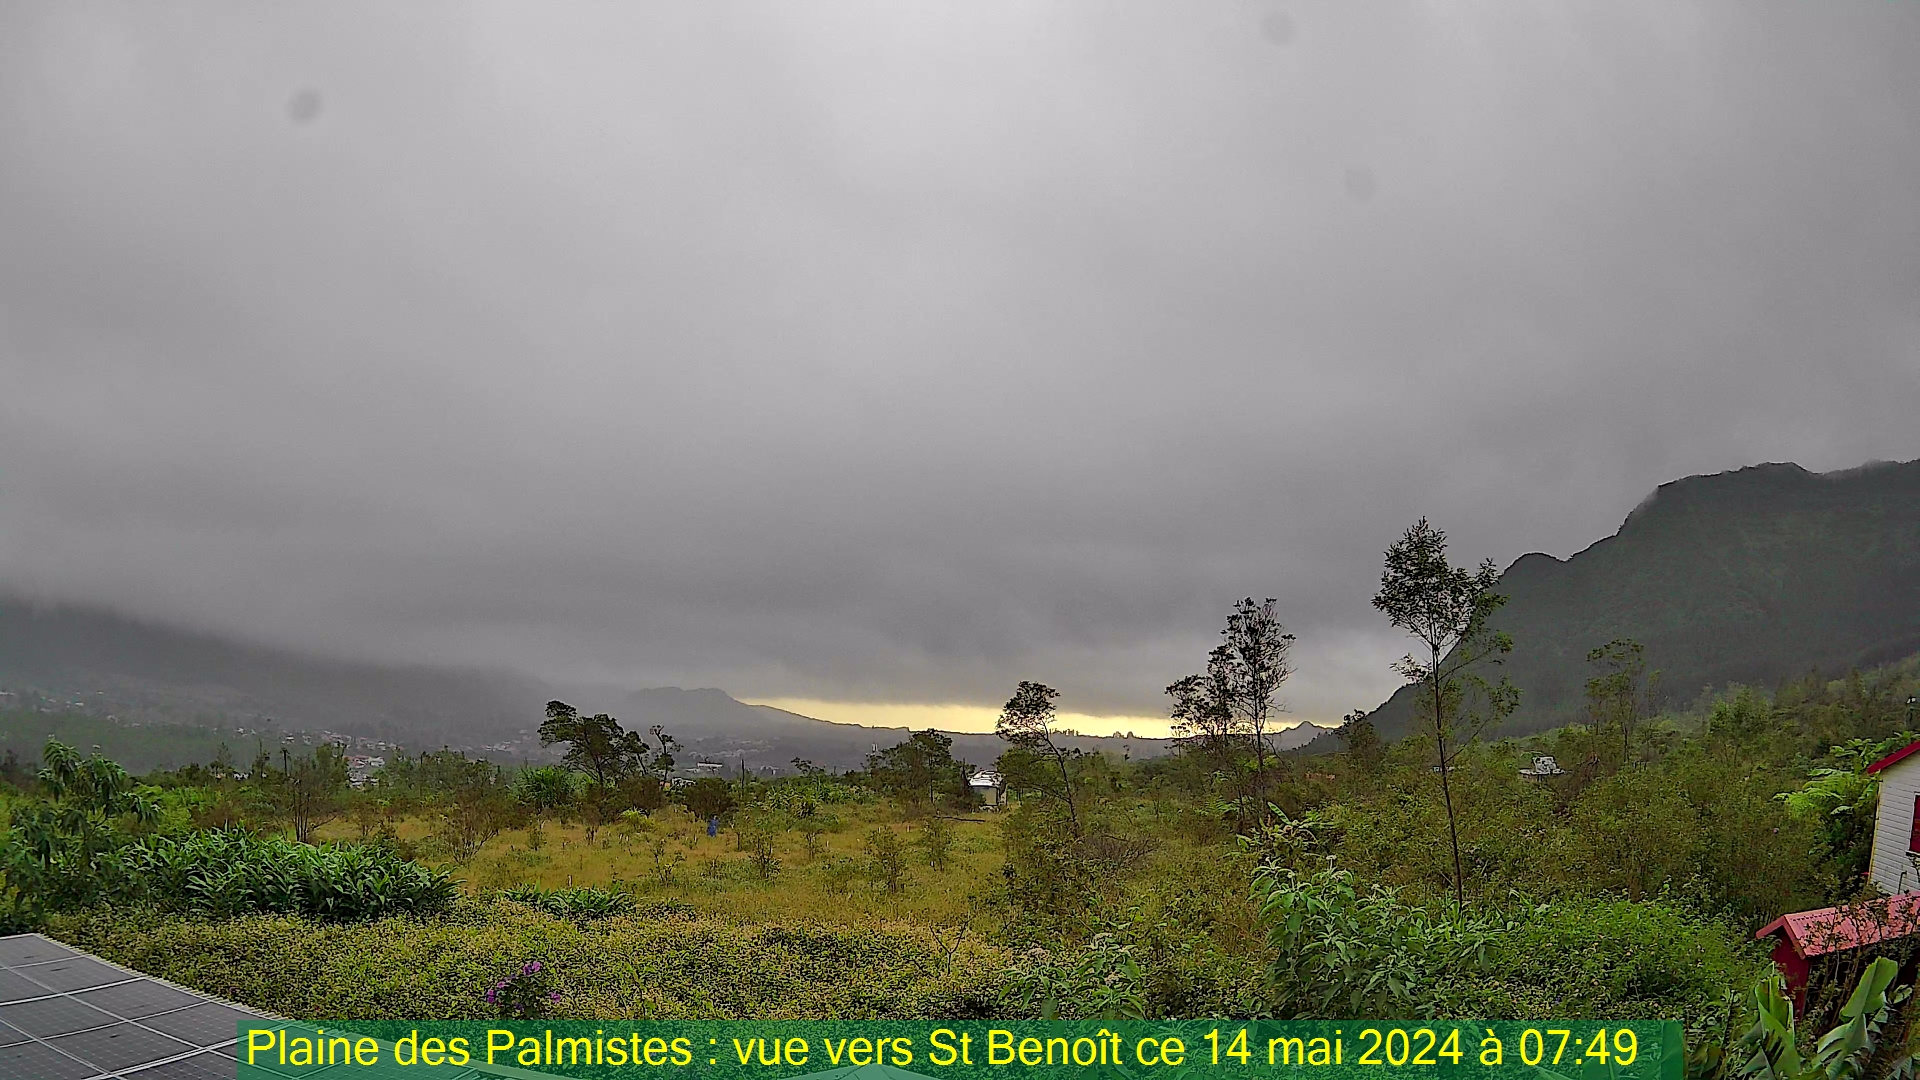 Saint-Denis (Réunion) Søn. 07:50